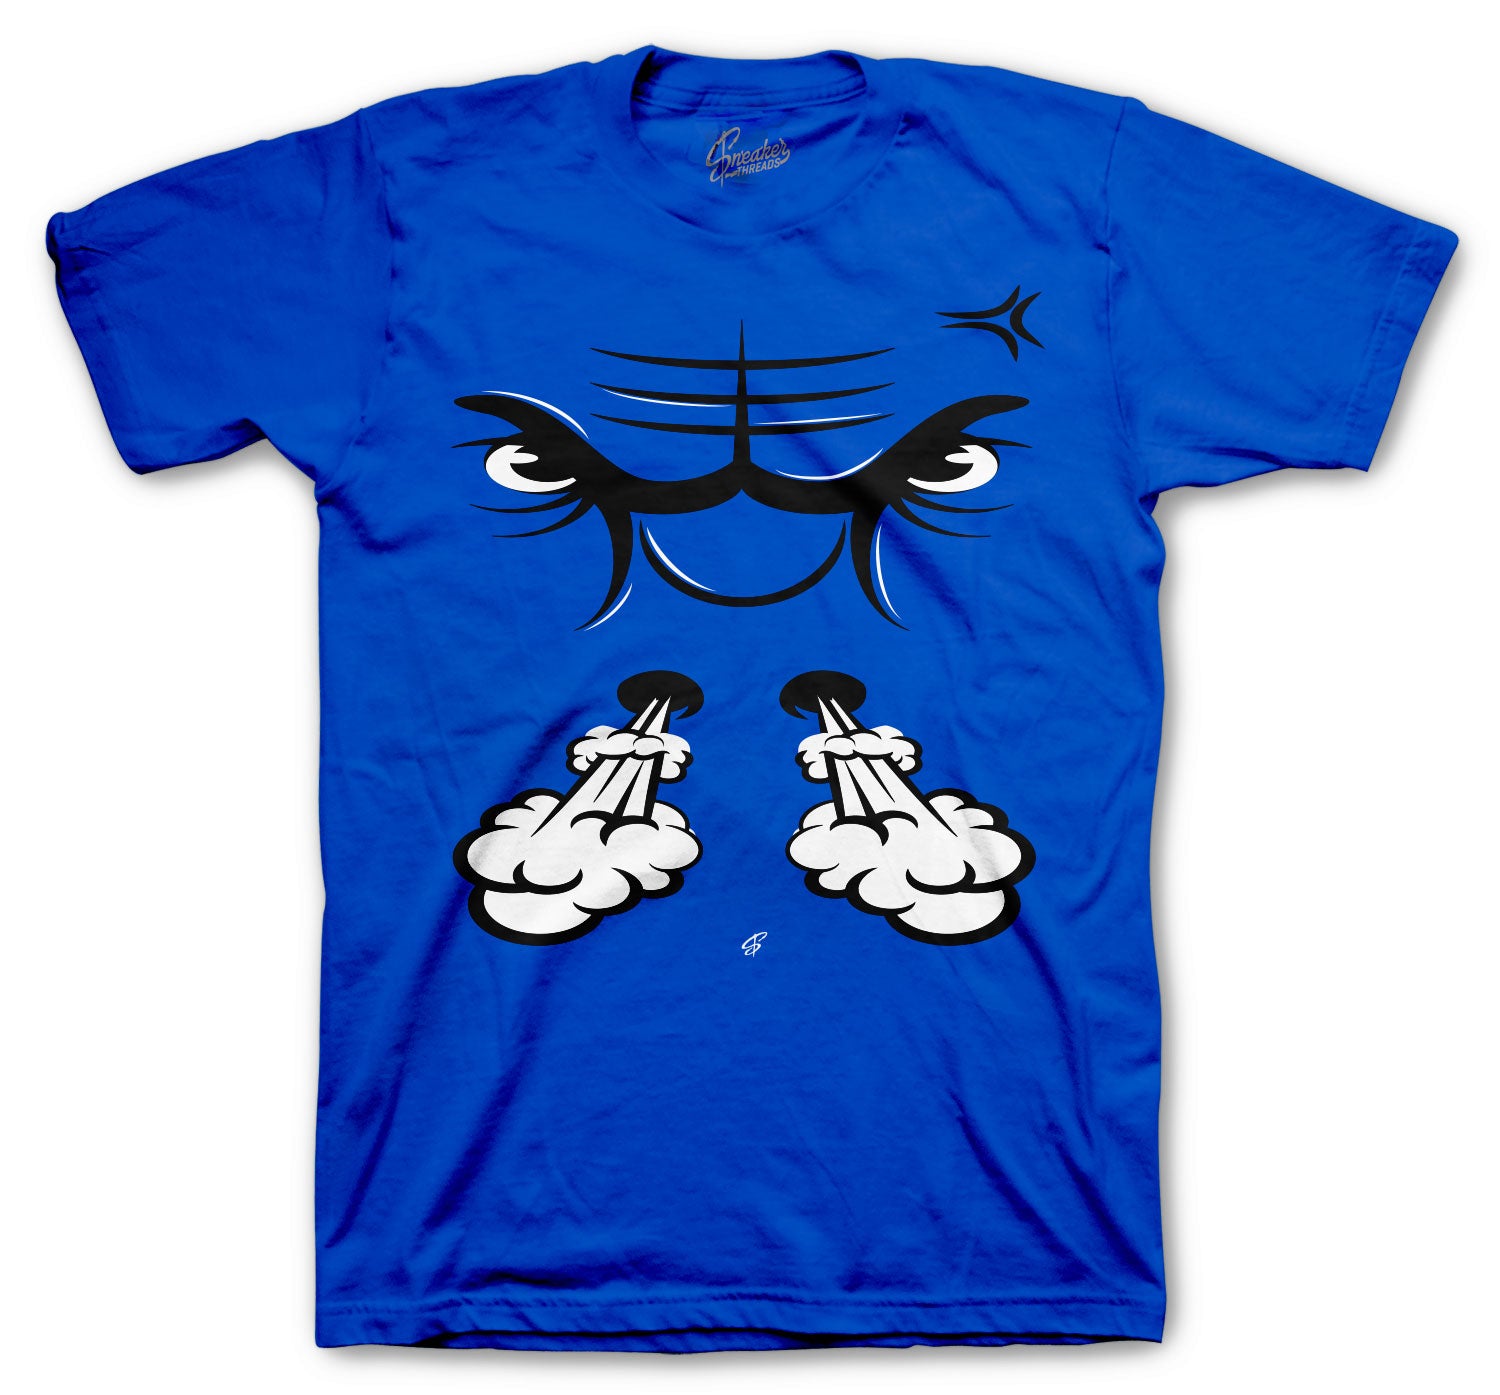 Raging Face T-Shirt - Retro 5 Racer Blue Shirt